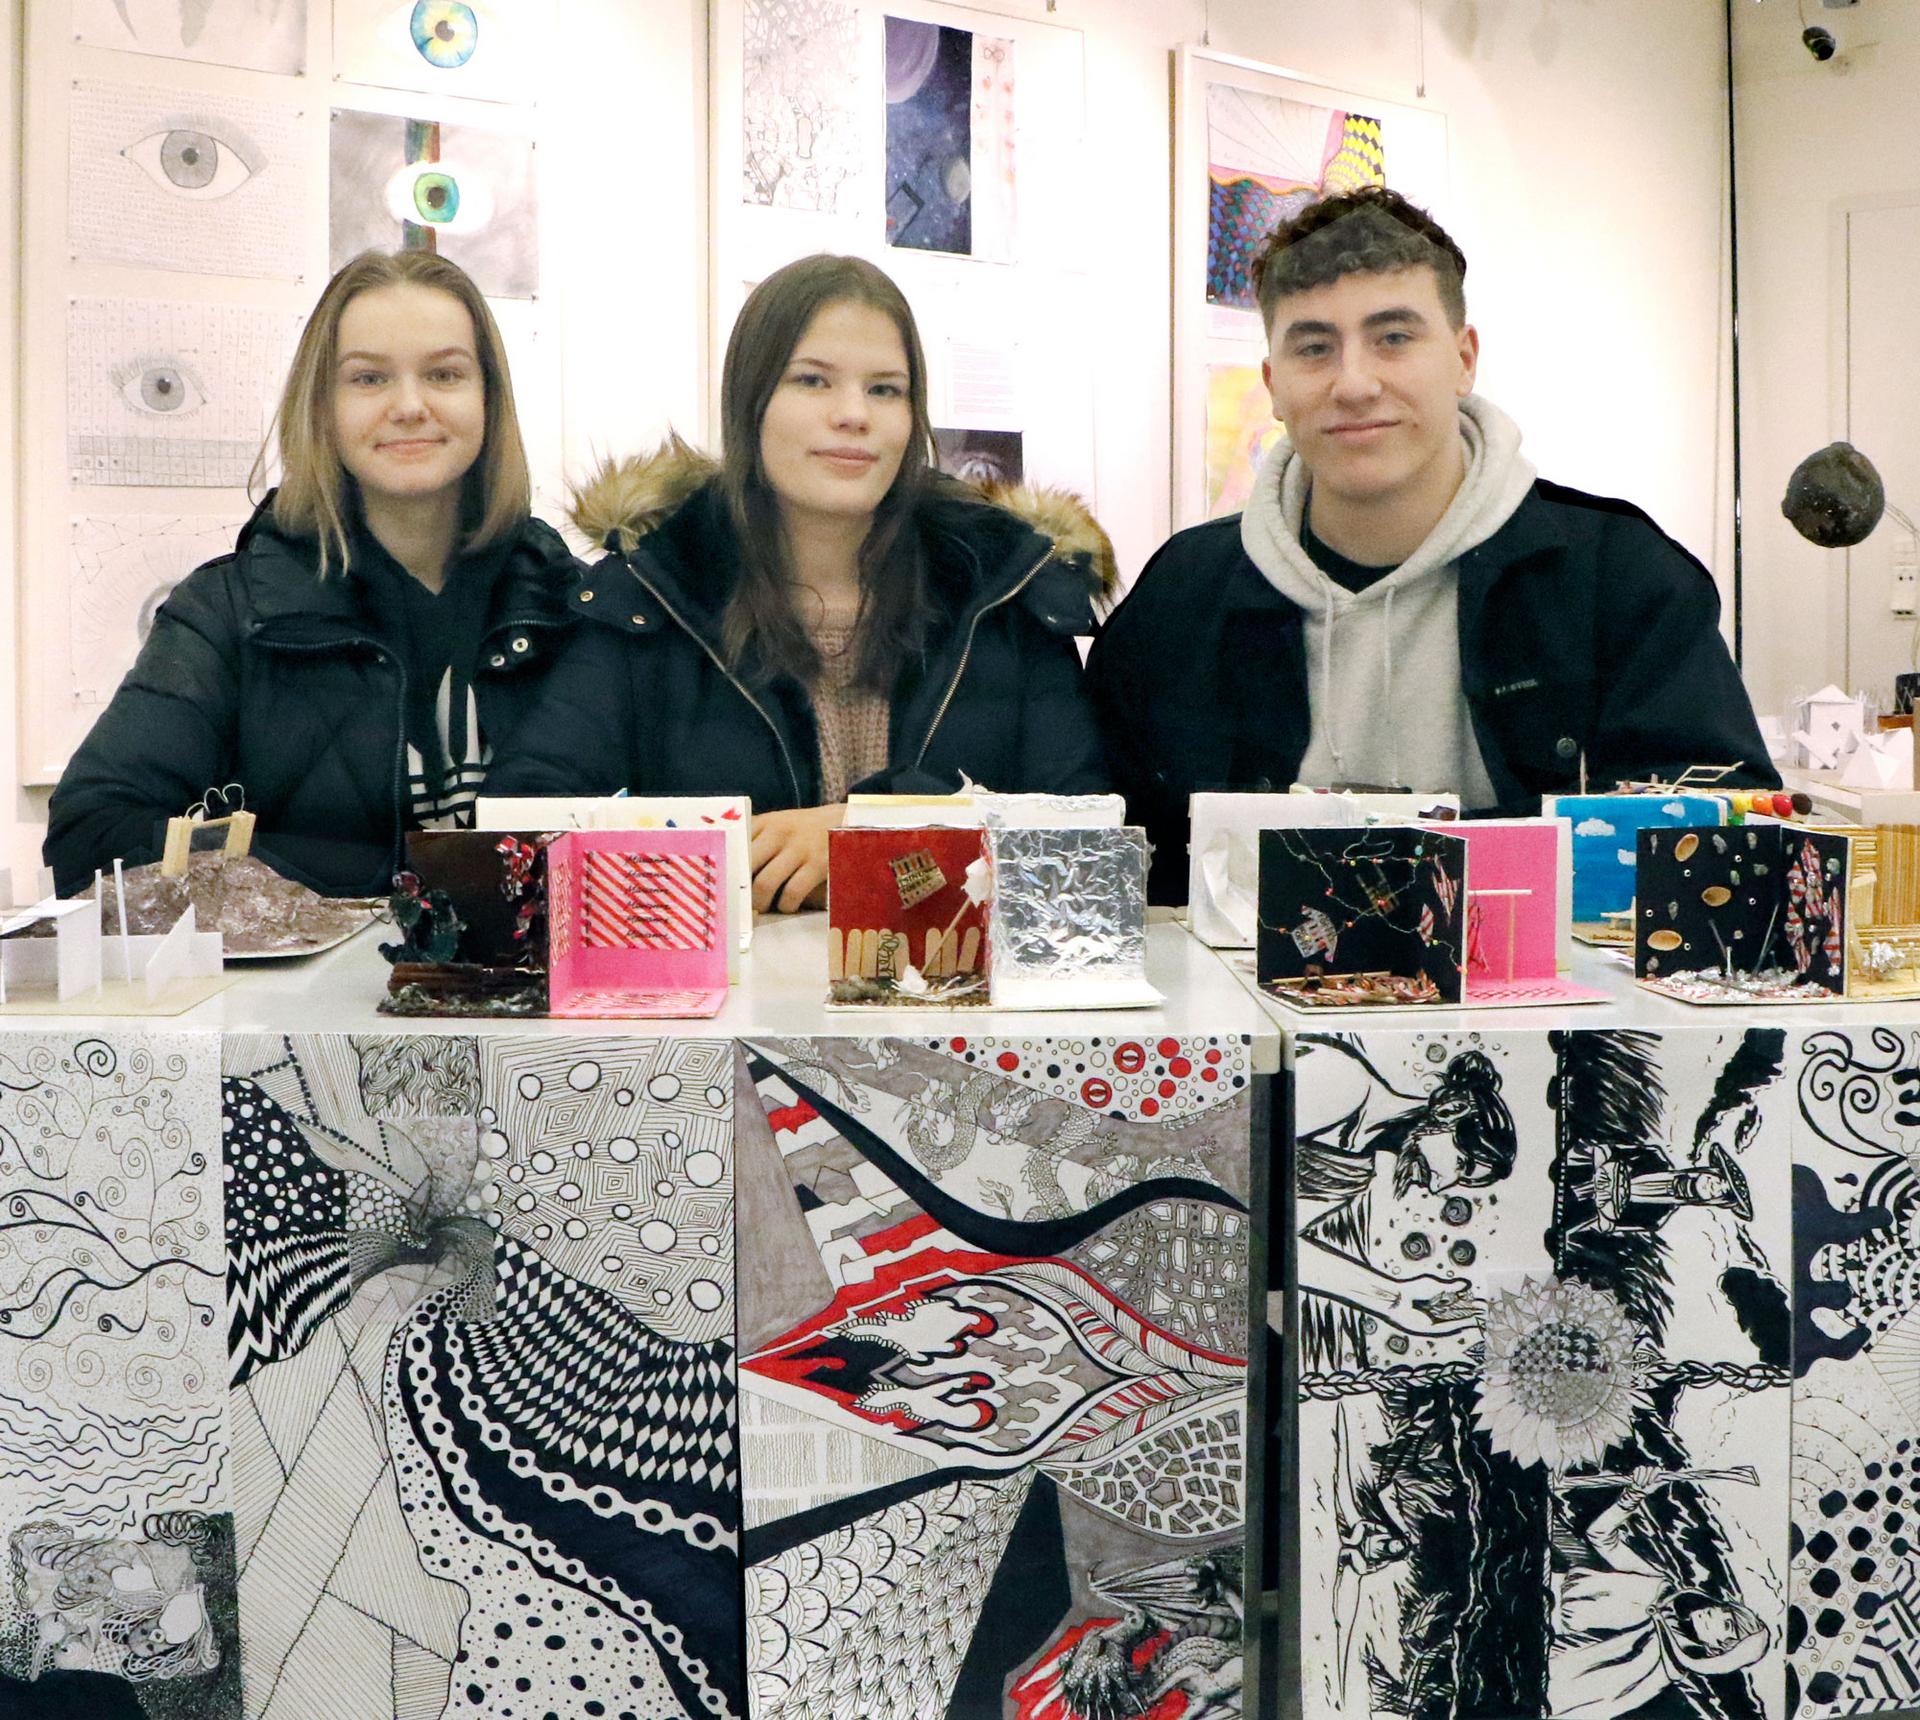 Kangasalan lukion kuvataidekurssilaisten syksyn töistä on koottu Tekonäky-näyttely, jossa on esillä myö Sanna Hietarannan, Jasmin Migdalin ja Jooel Hildénin töitä.